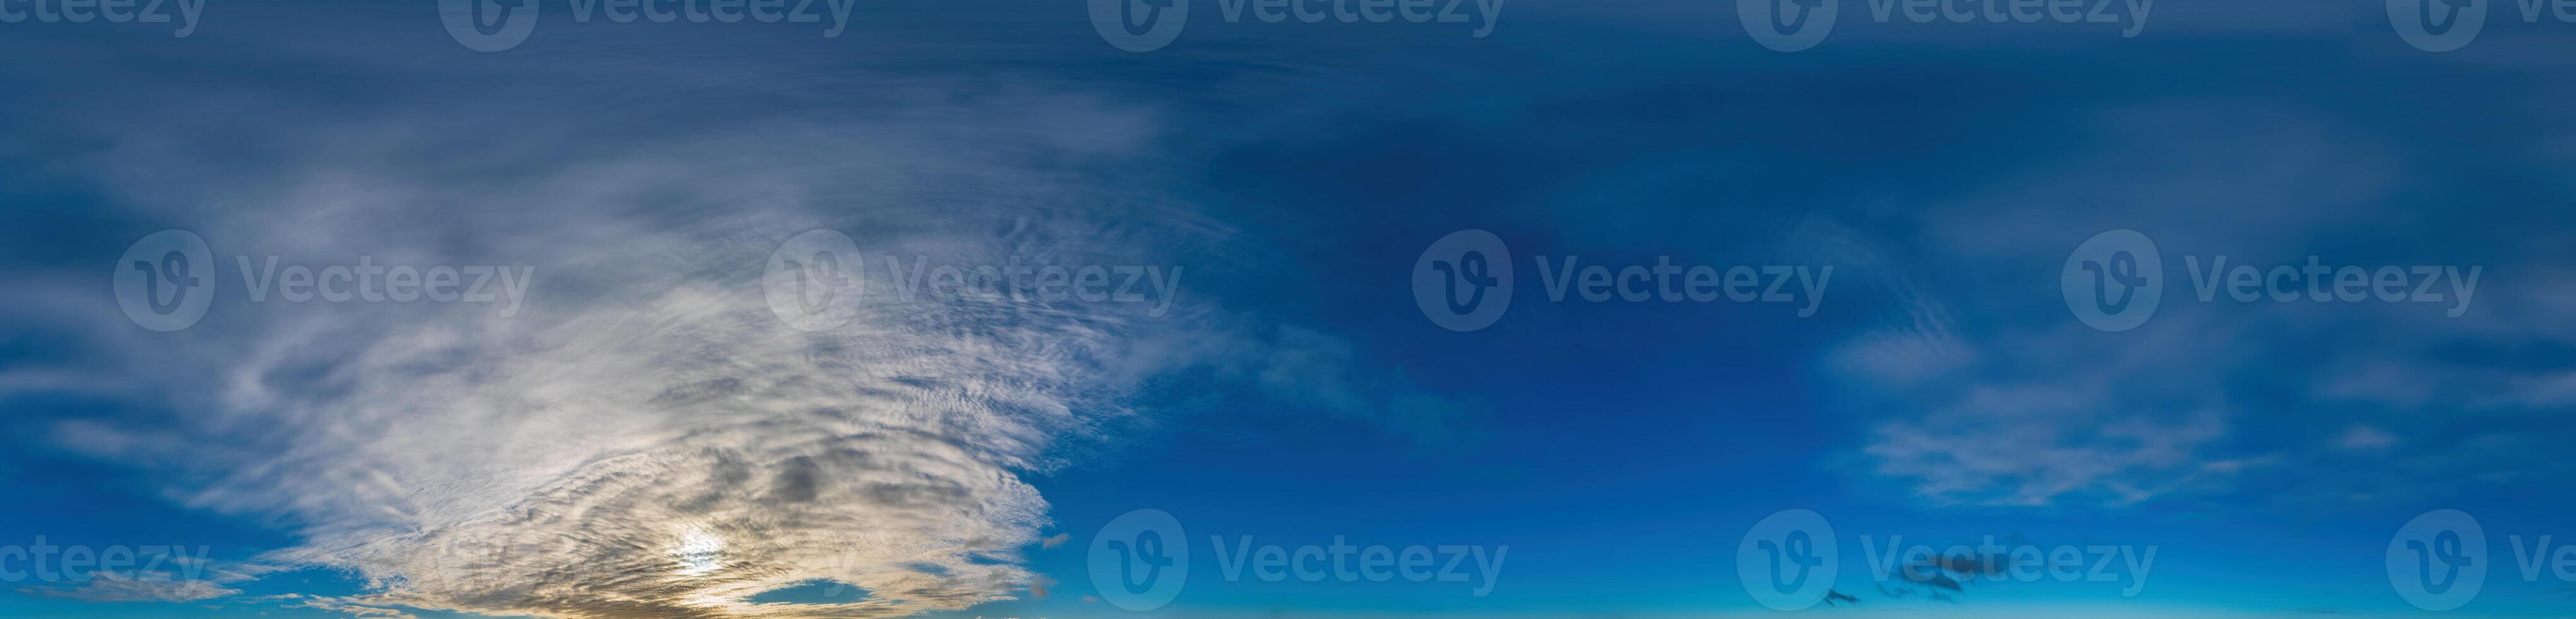 blauw lucht met cirrus wolken naadloos panorama in bolvormig equirectangular formaat. compleet zenit voor gebruik in 3d grafiek, spel en voor composieten in antenne dar 360 mate panorama's net zo een lucht koepel foto